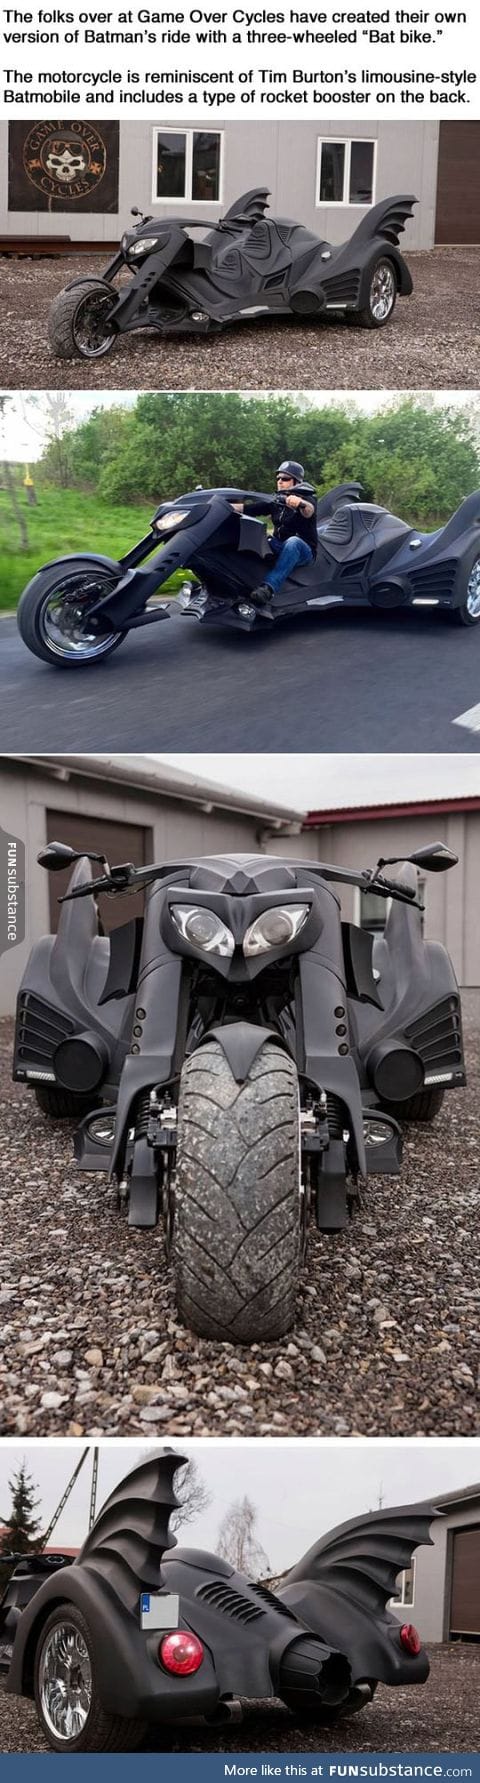 Three-wheeled bat-bike